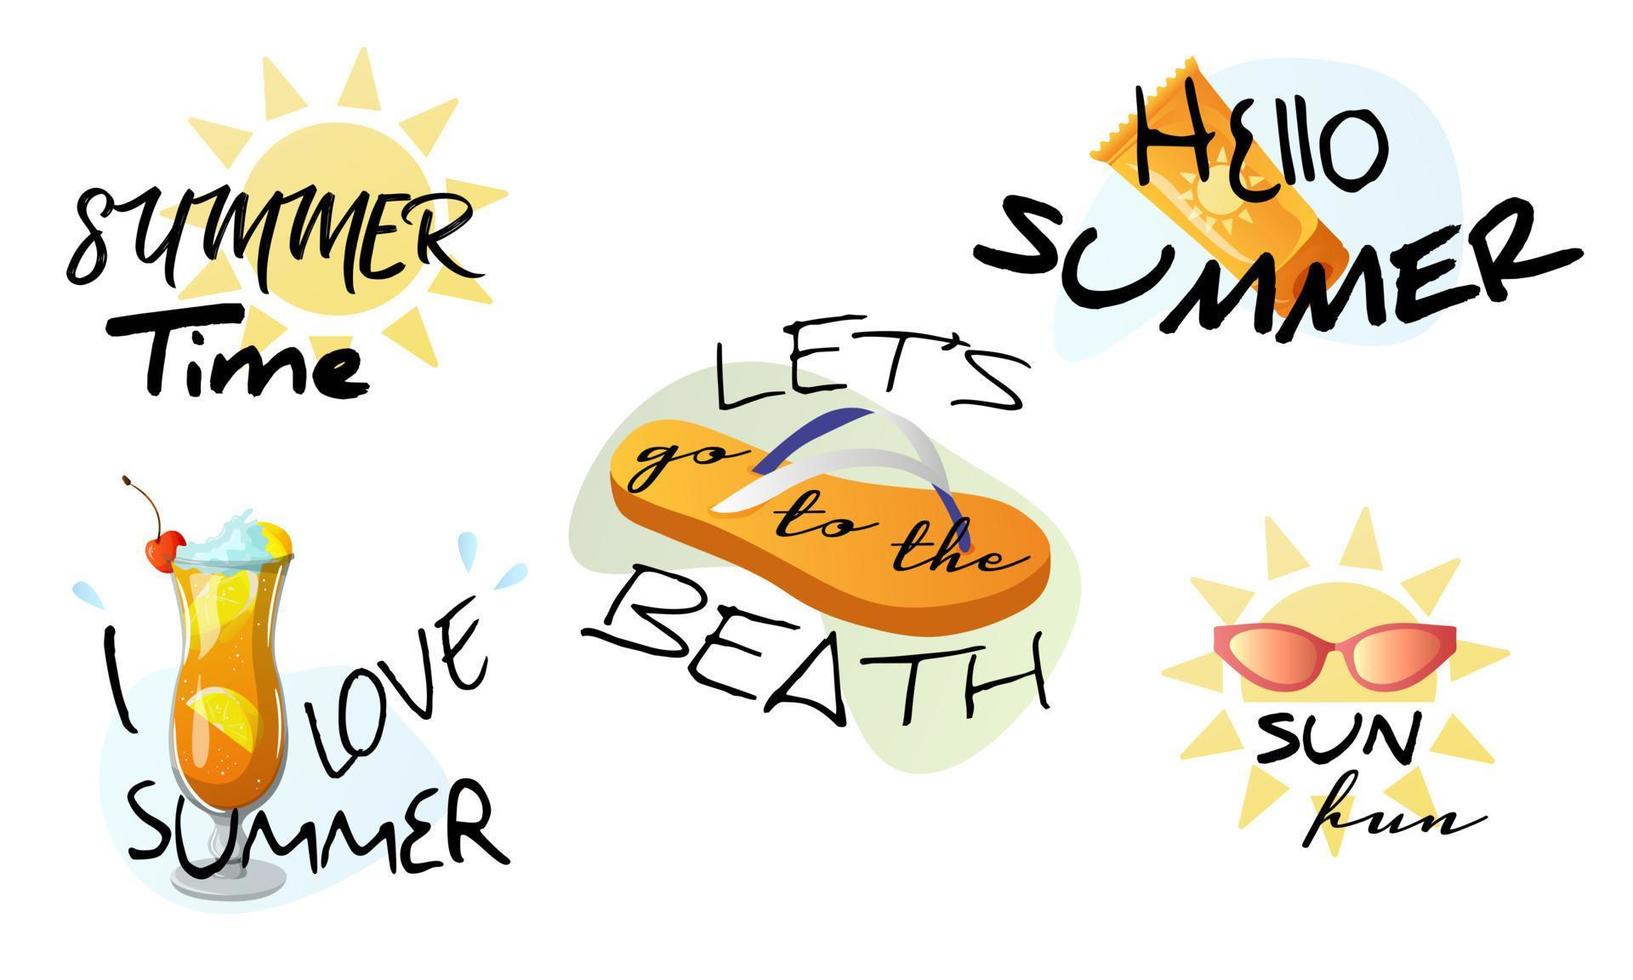 etichette estive, loghi ed elementi per vacanze estive, viaggi, vacanze al mare, sole. vettore